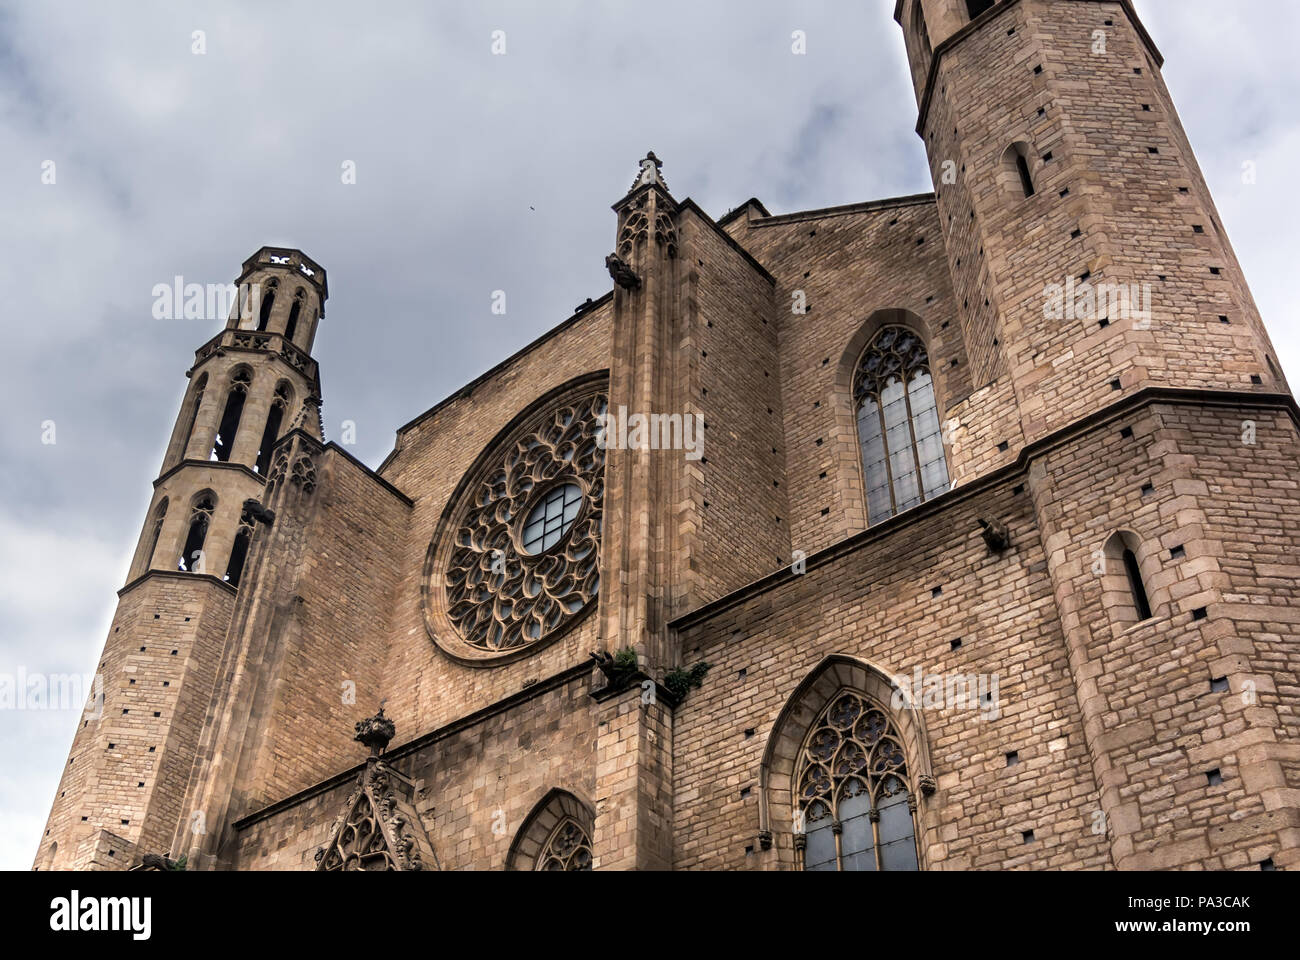 El West End y el rosetón del gótico catalán la iglesia de Santa María del Mar en Barcelona, también conocida como la "Catedral de La Ribera' Foto de stock